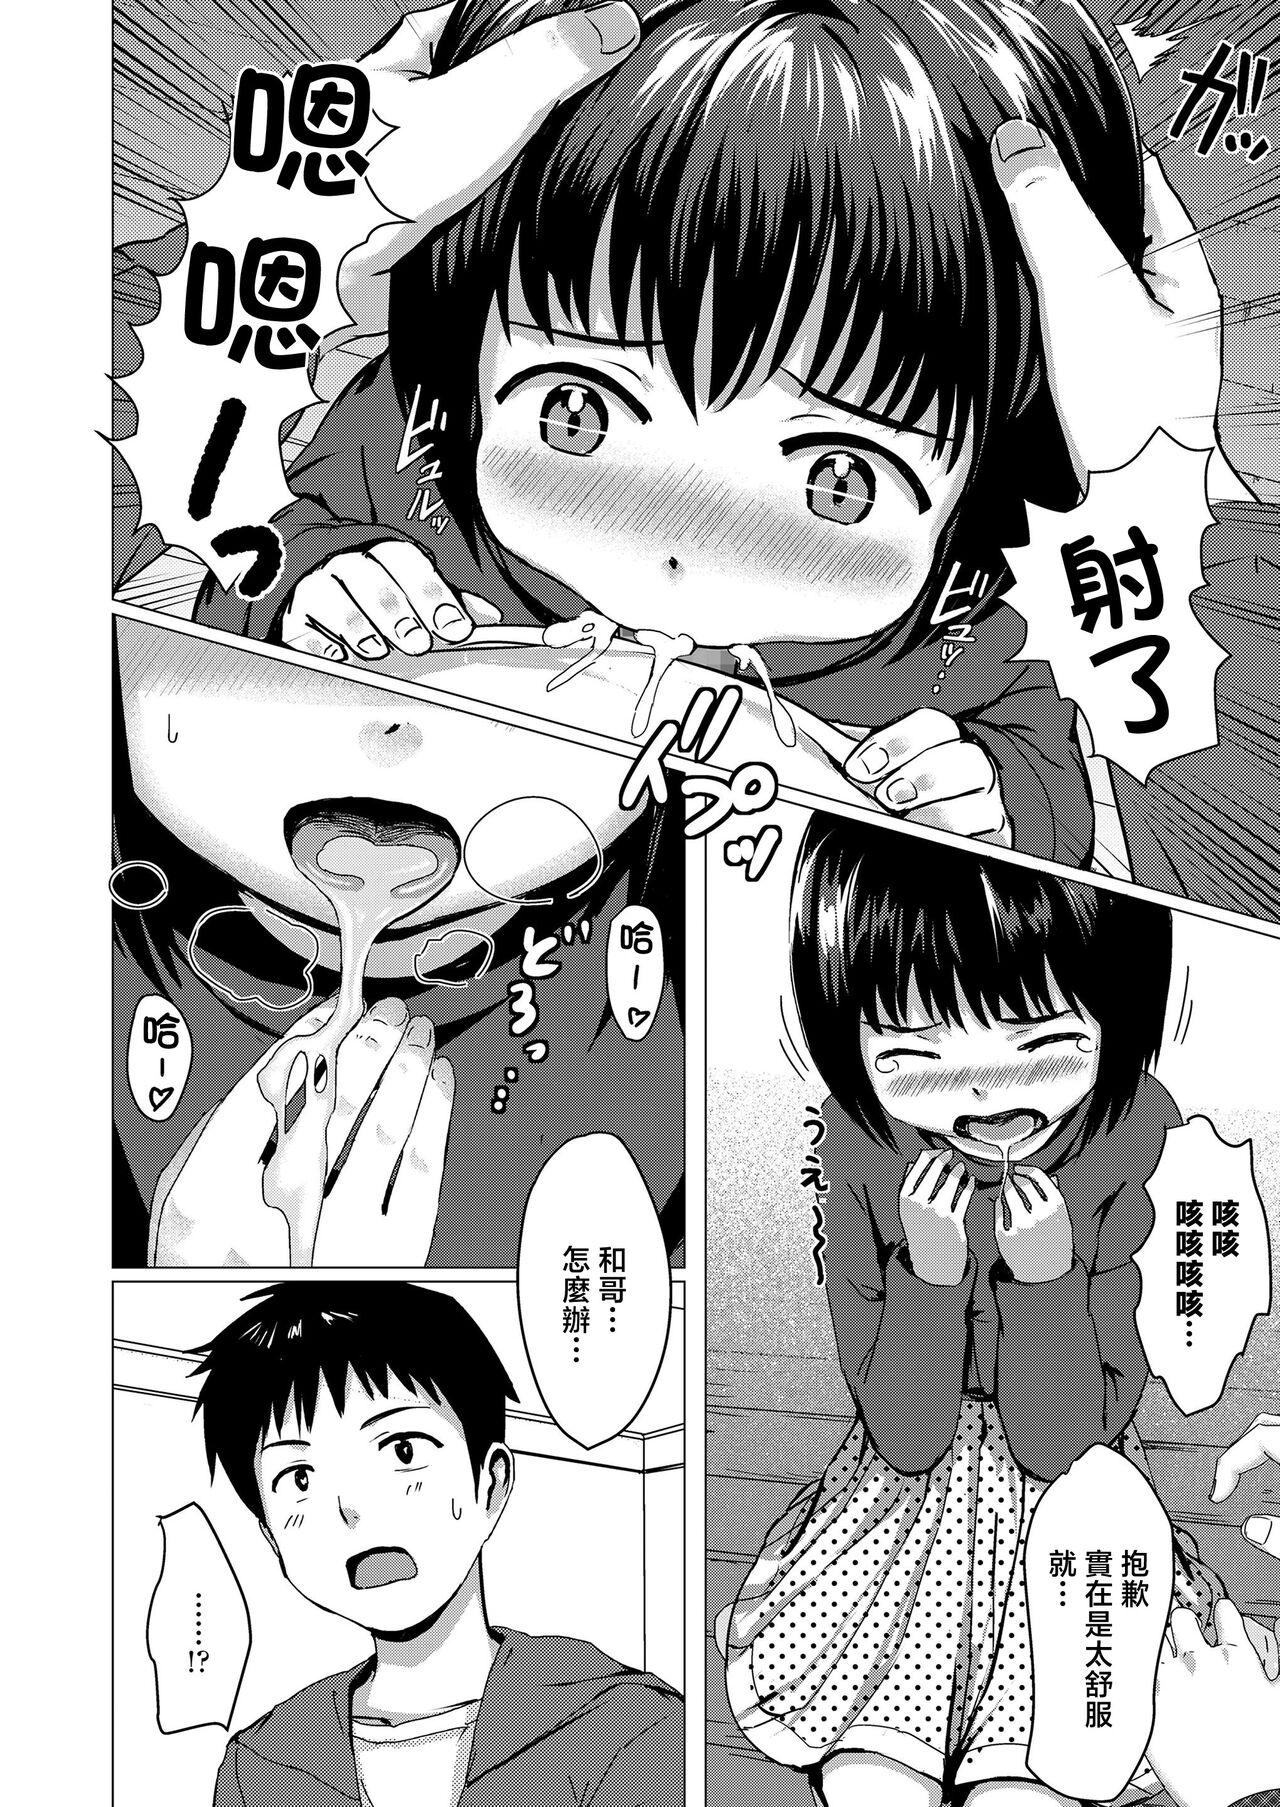 Hardcorend Oyatsu no Jikan Caught - Page 6